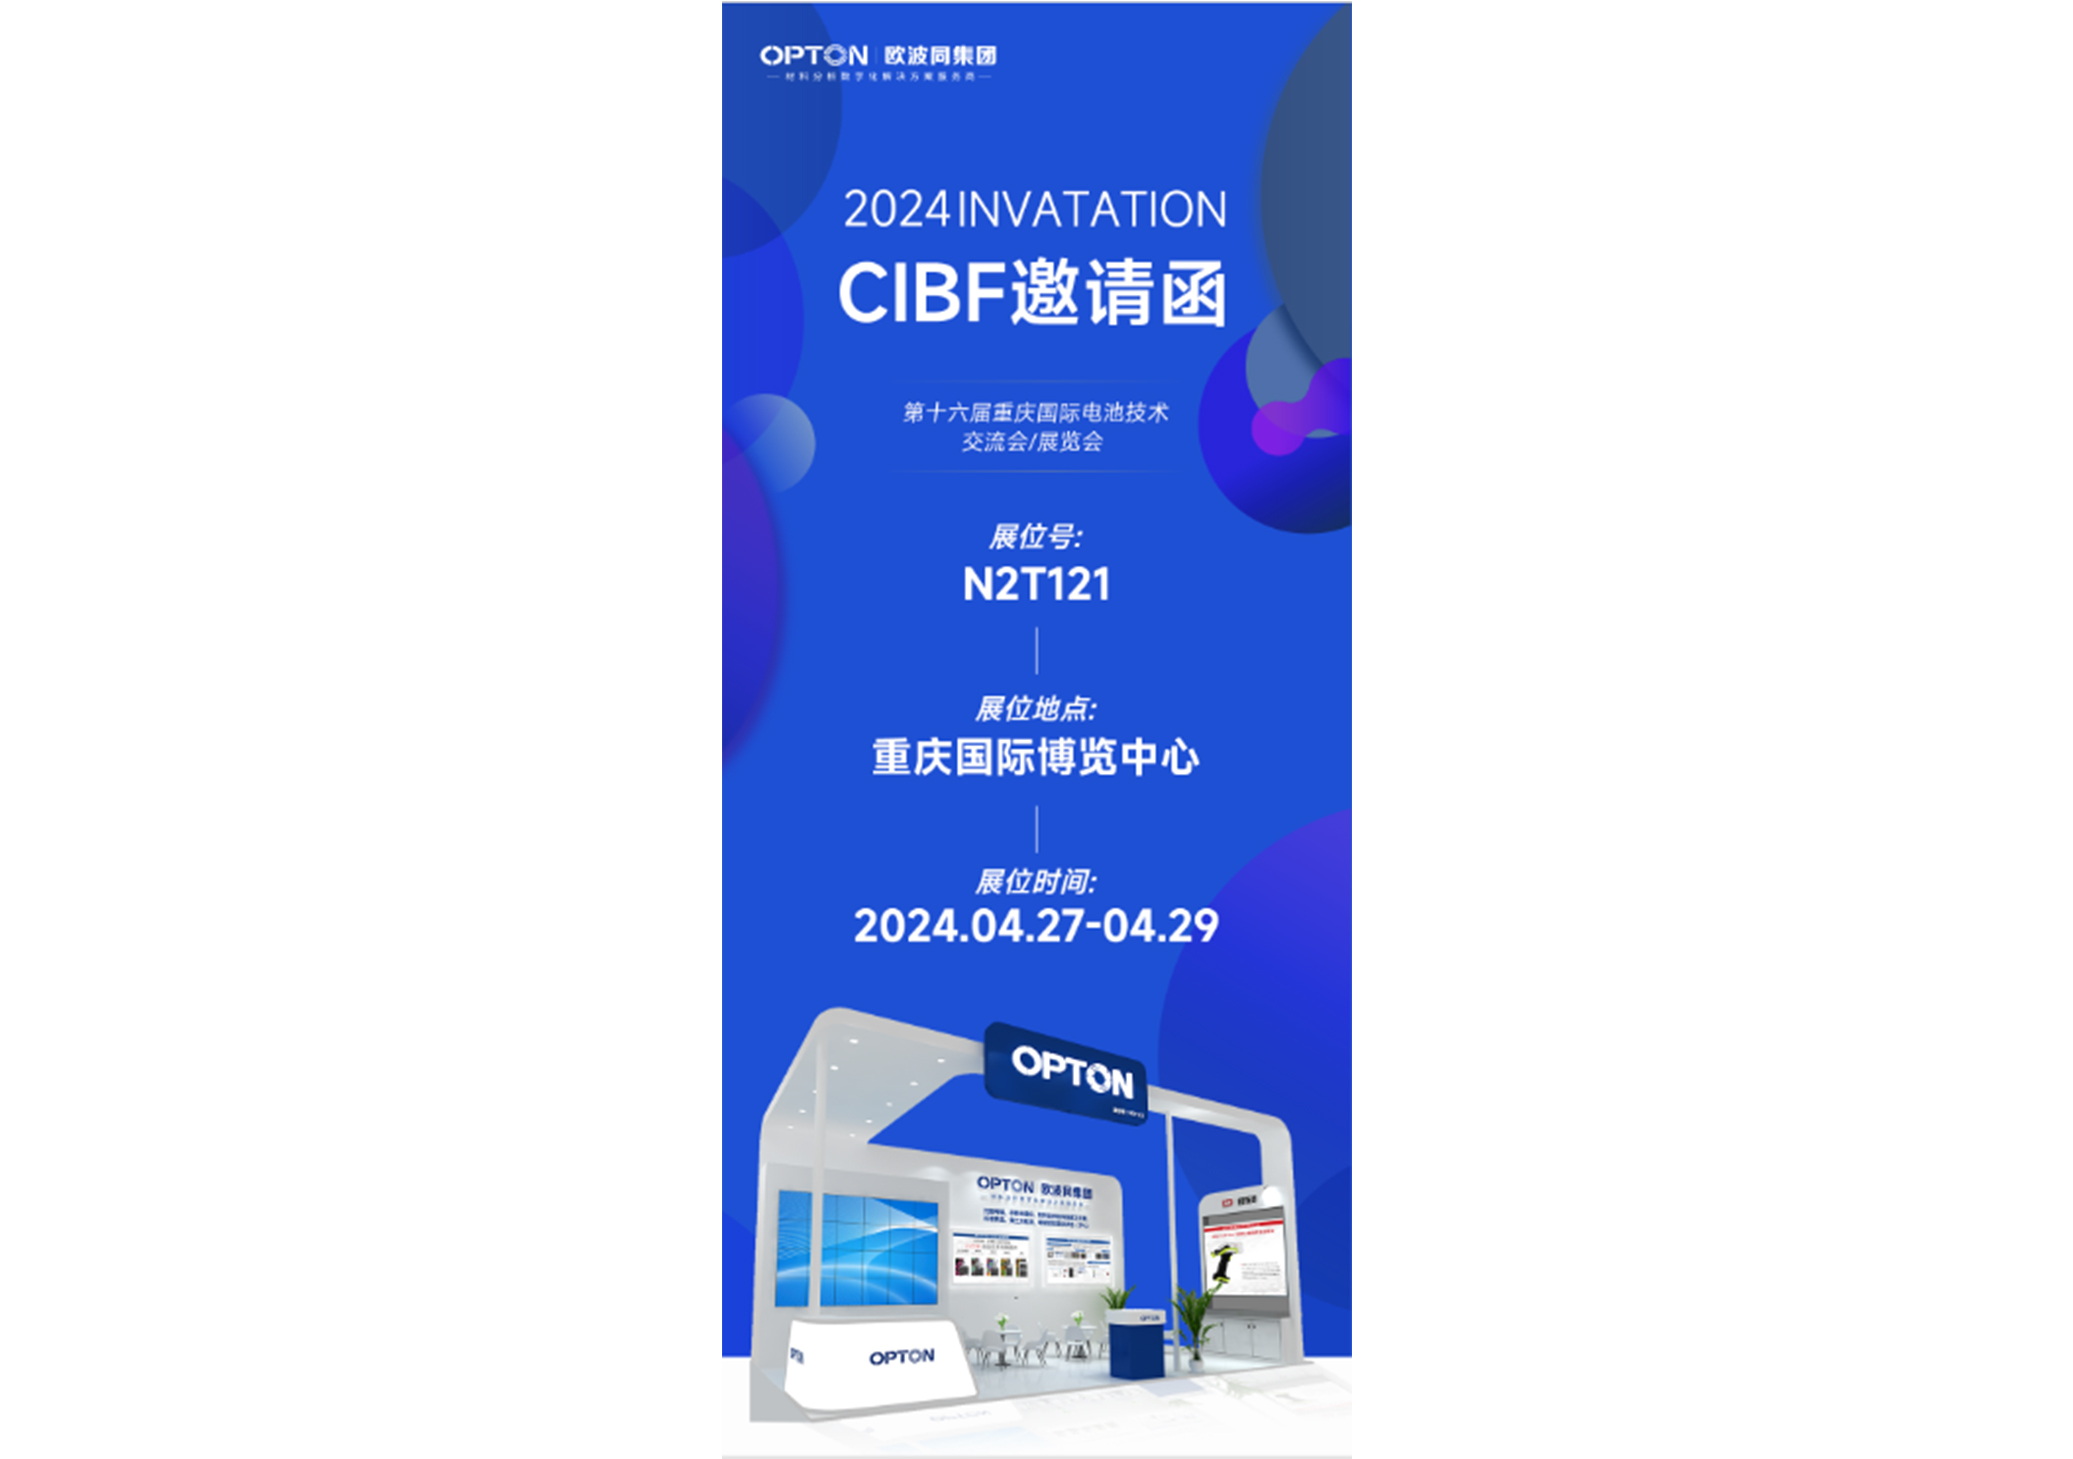 澳门新浦京网站邀您参加CIBF2024展览会